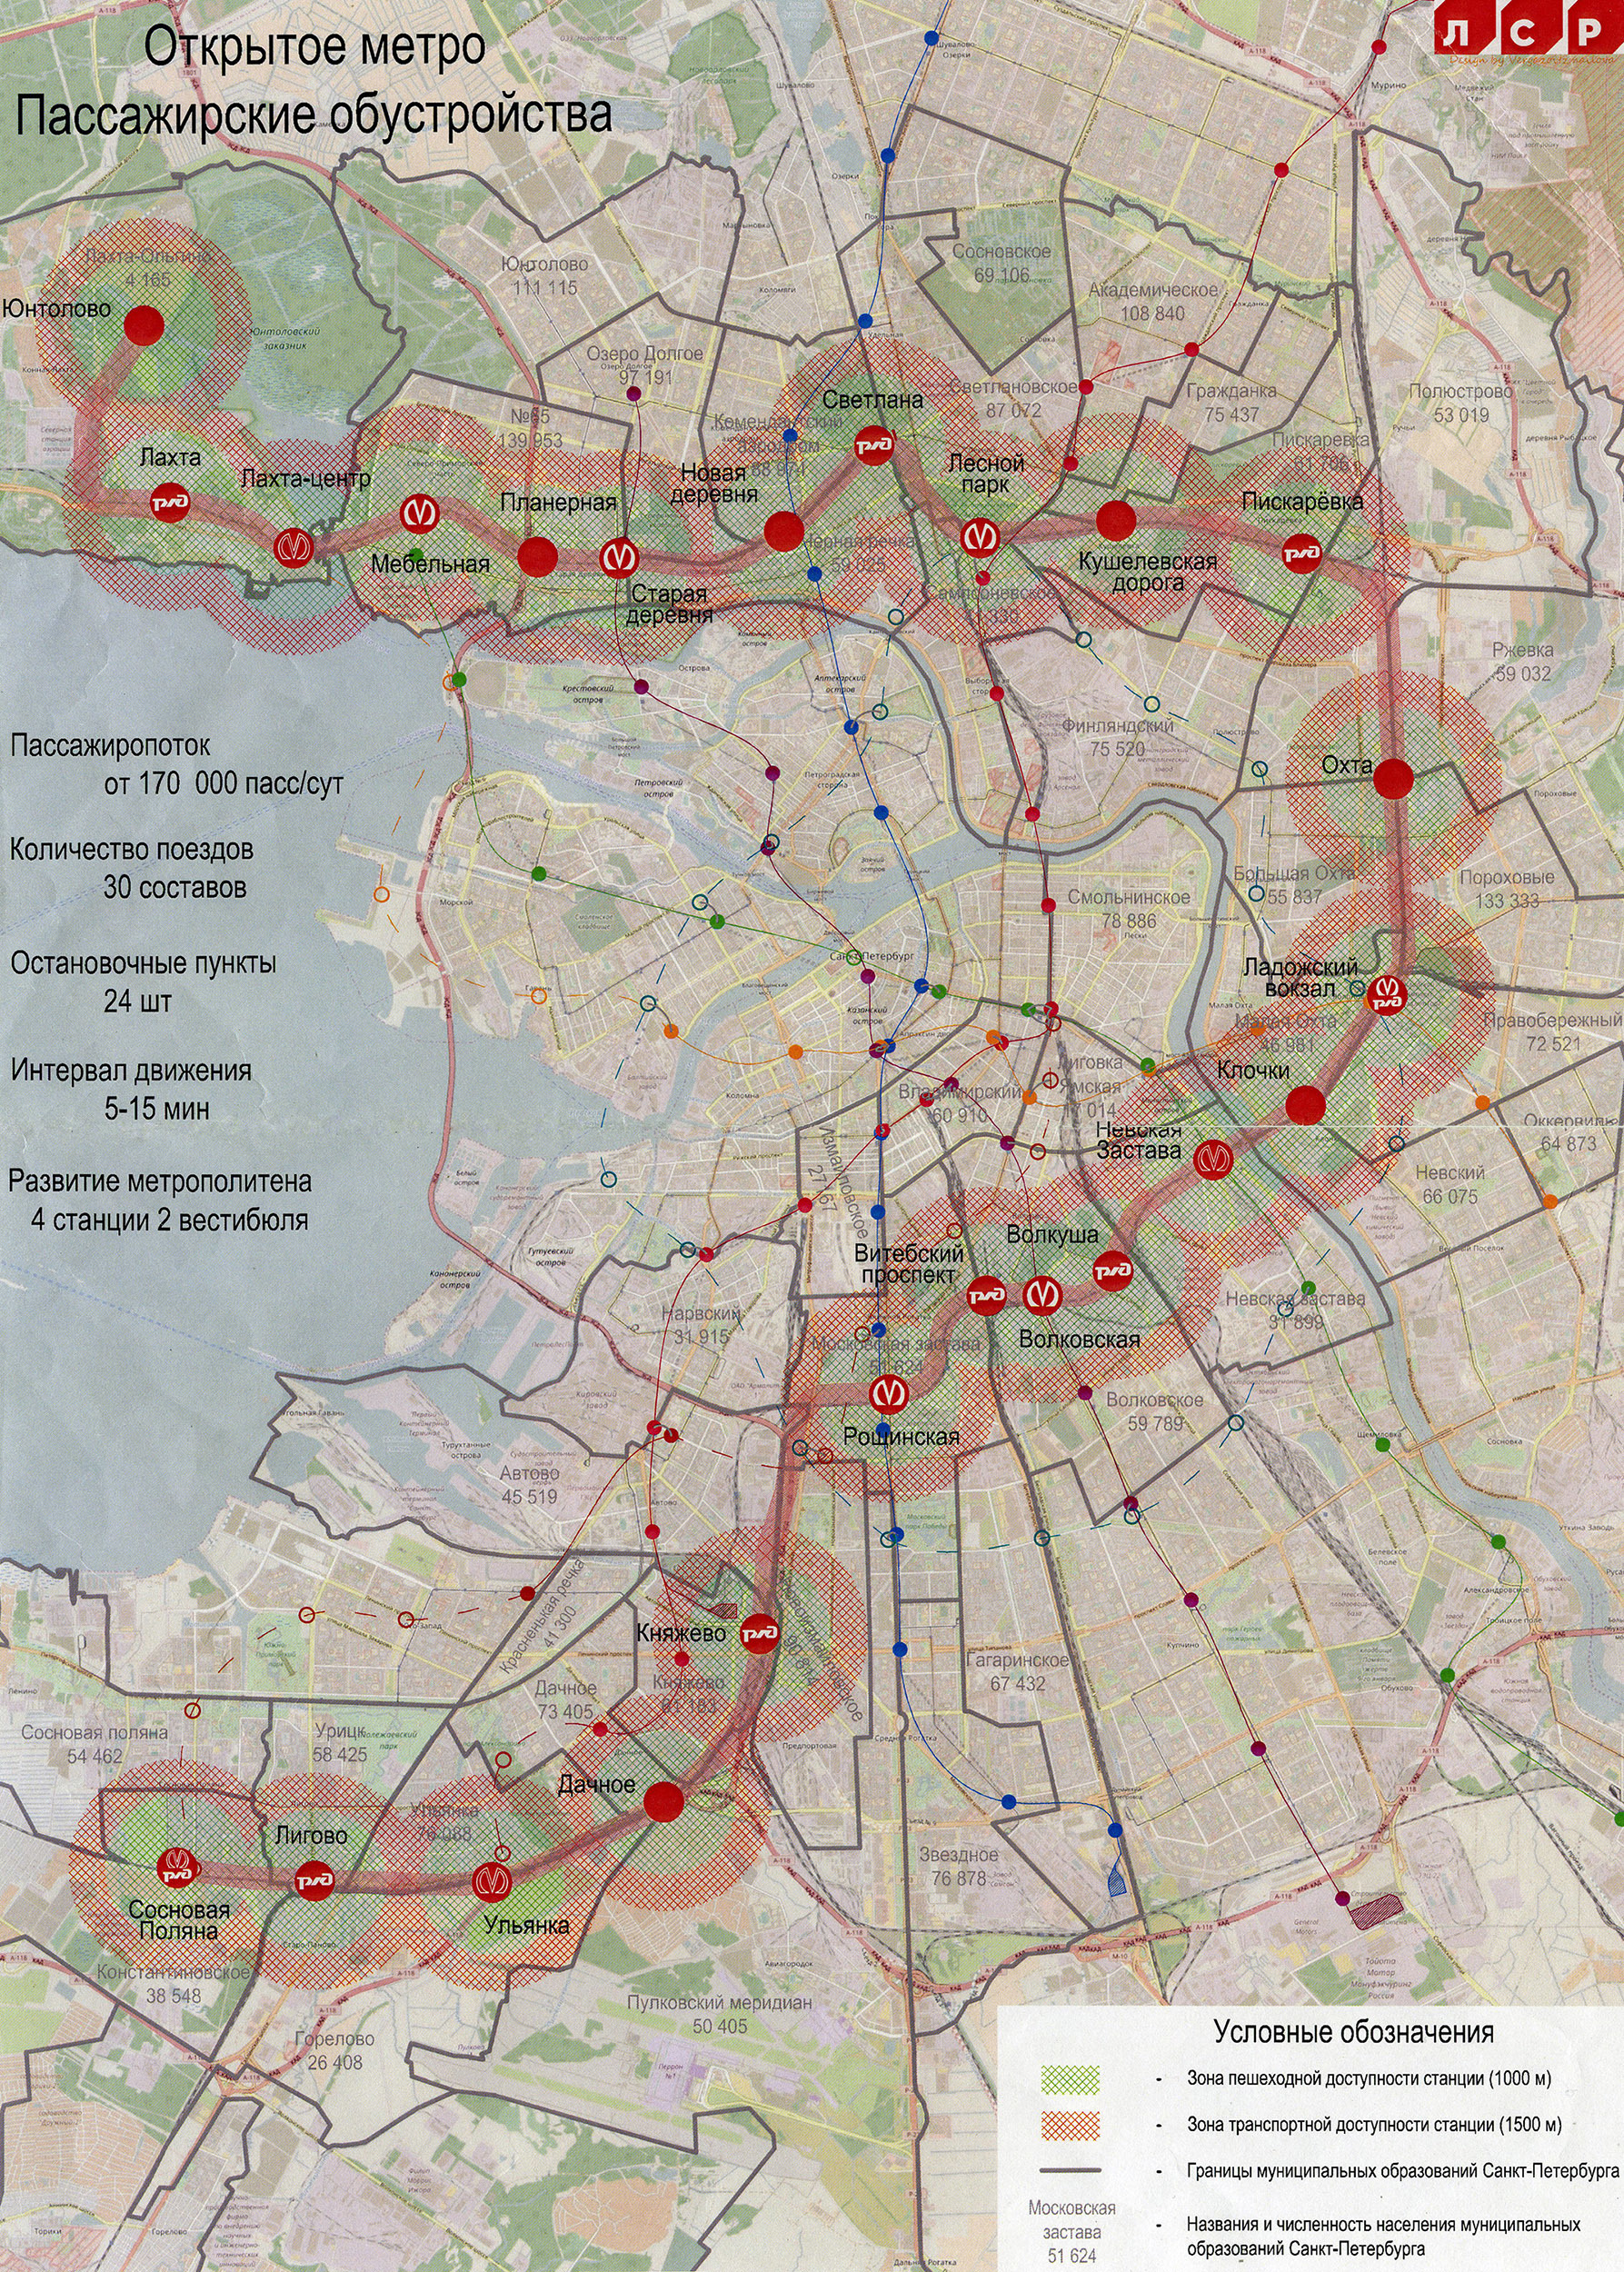 В СМИ появилась карта кольцевого наземного метро Петербурга